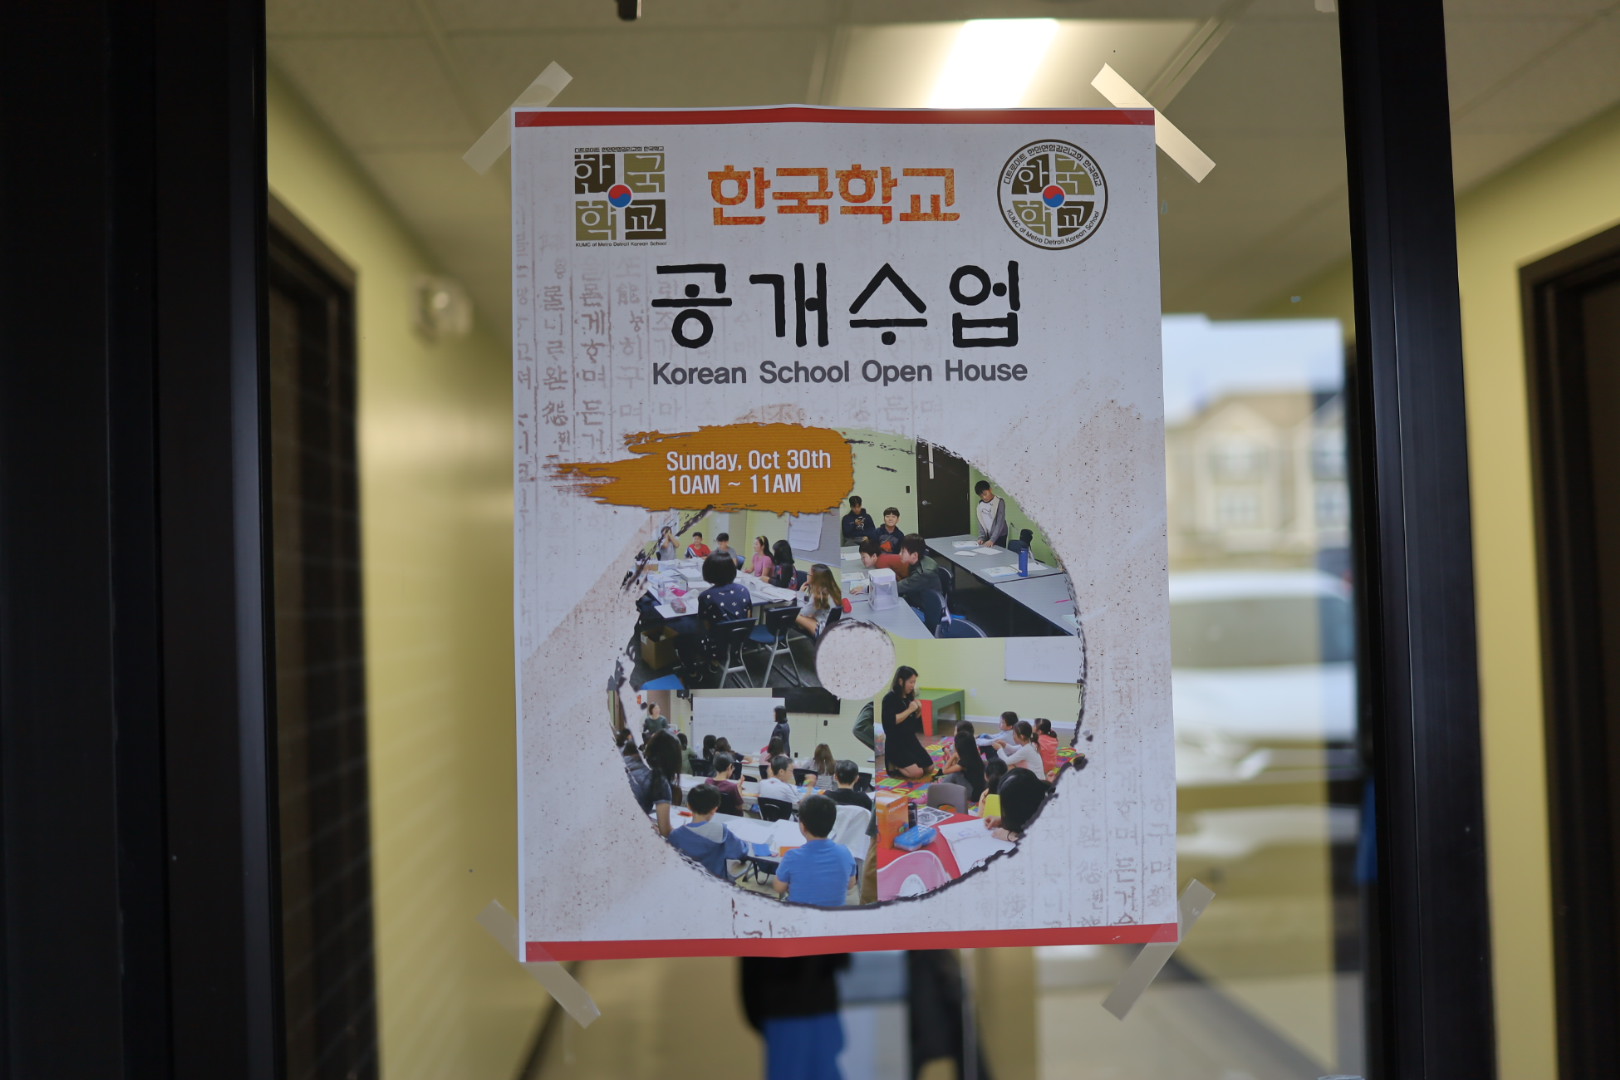 30 октября Детройтская корейская школа провела открытый урок, пригласив родителей.